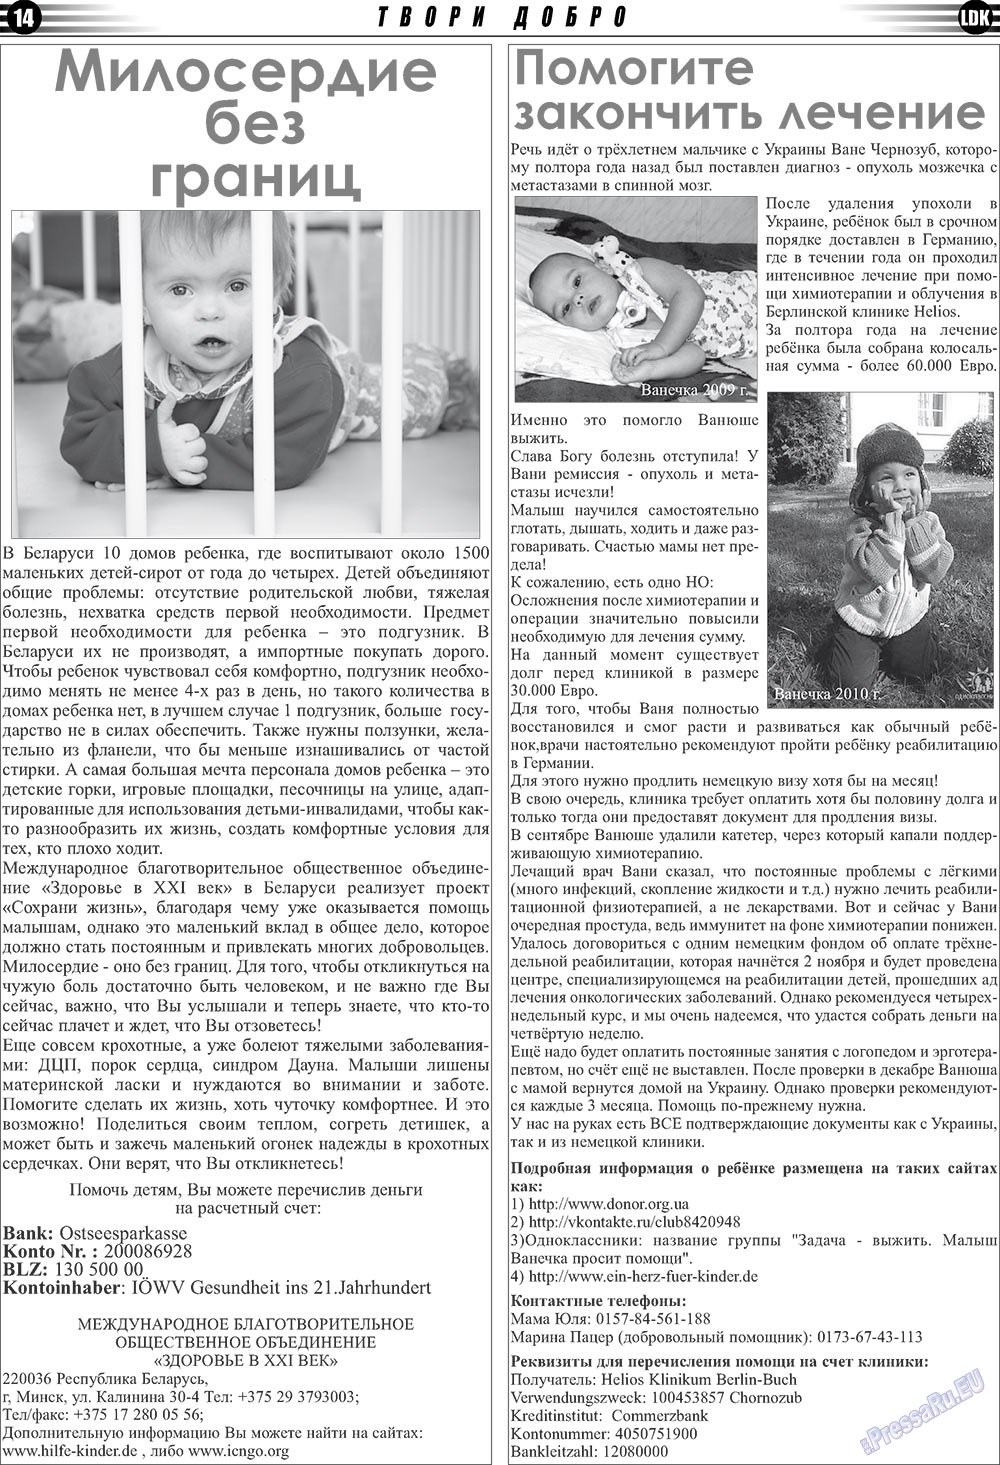 LDK по-русски (газета). 2010 год, номер 11, стр. 14